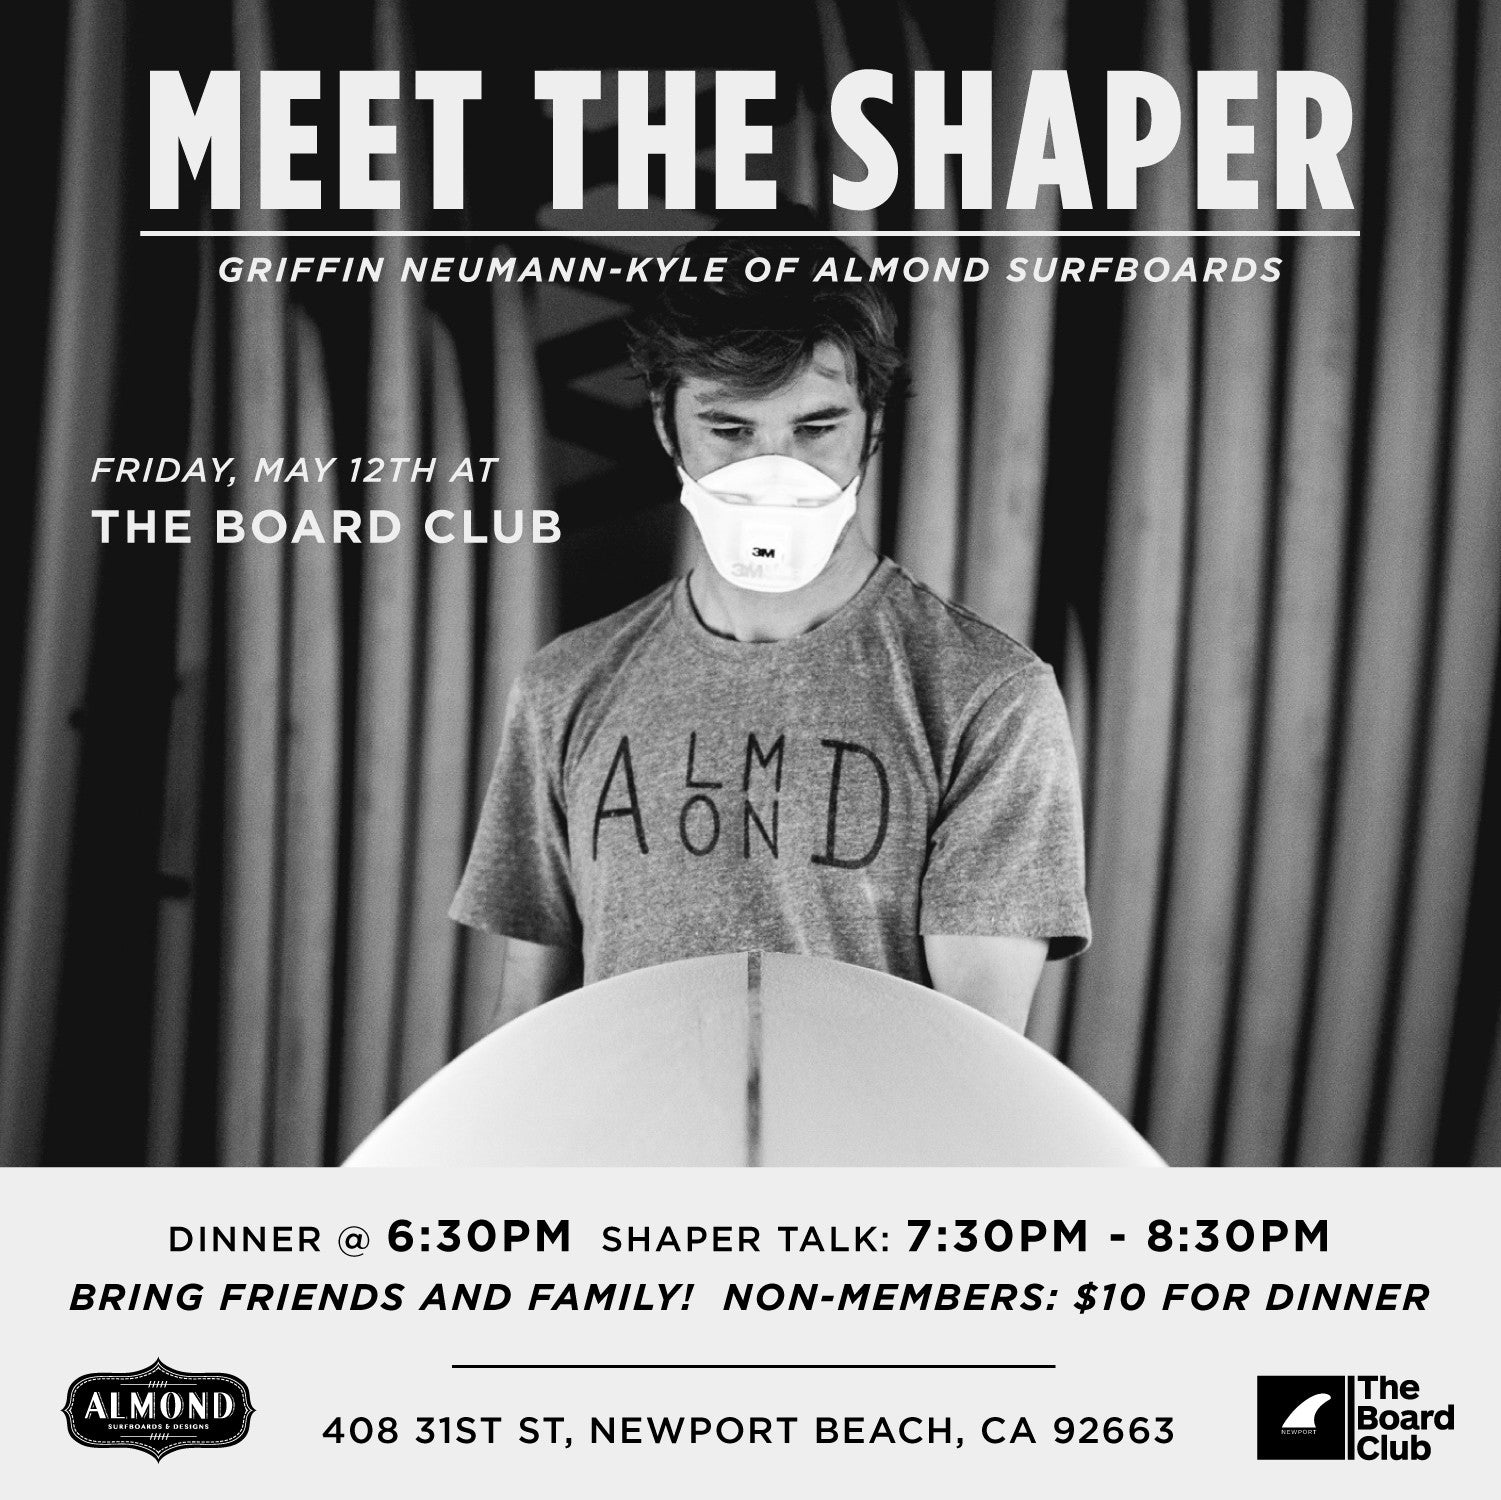 Meet The Shaper Night | The Board Club